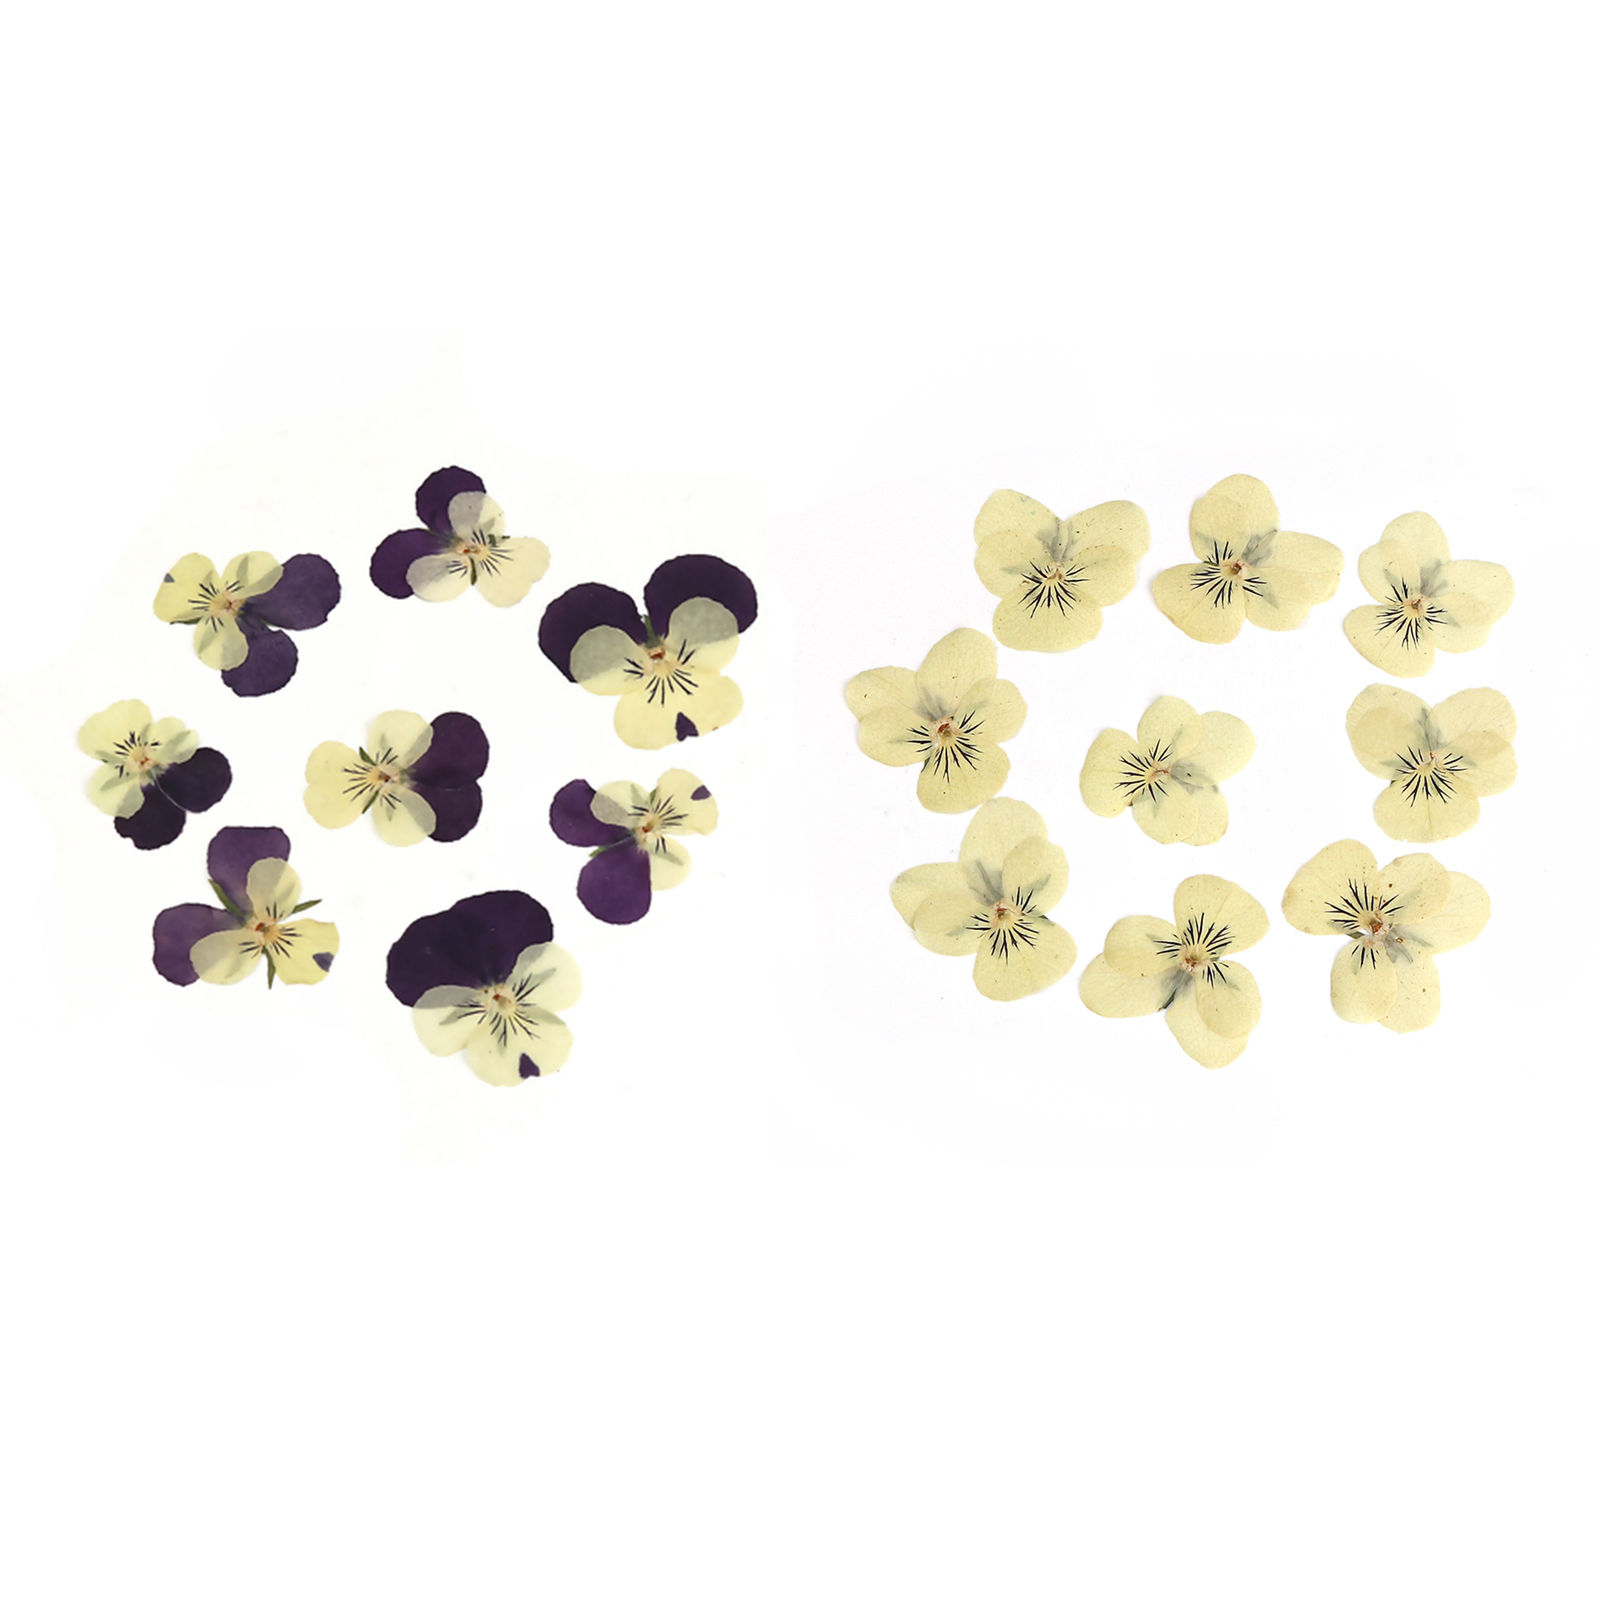 Immagine di Fiore Reale Secchi Strumenti di Gioielli in Resina Colore Viola 16.5cm x 1.8cm, 1 Pacchetto ( 8 Pz/Pacco)